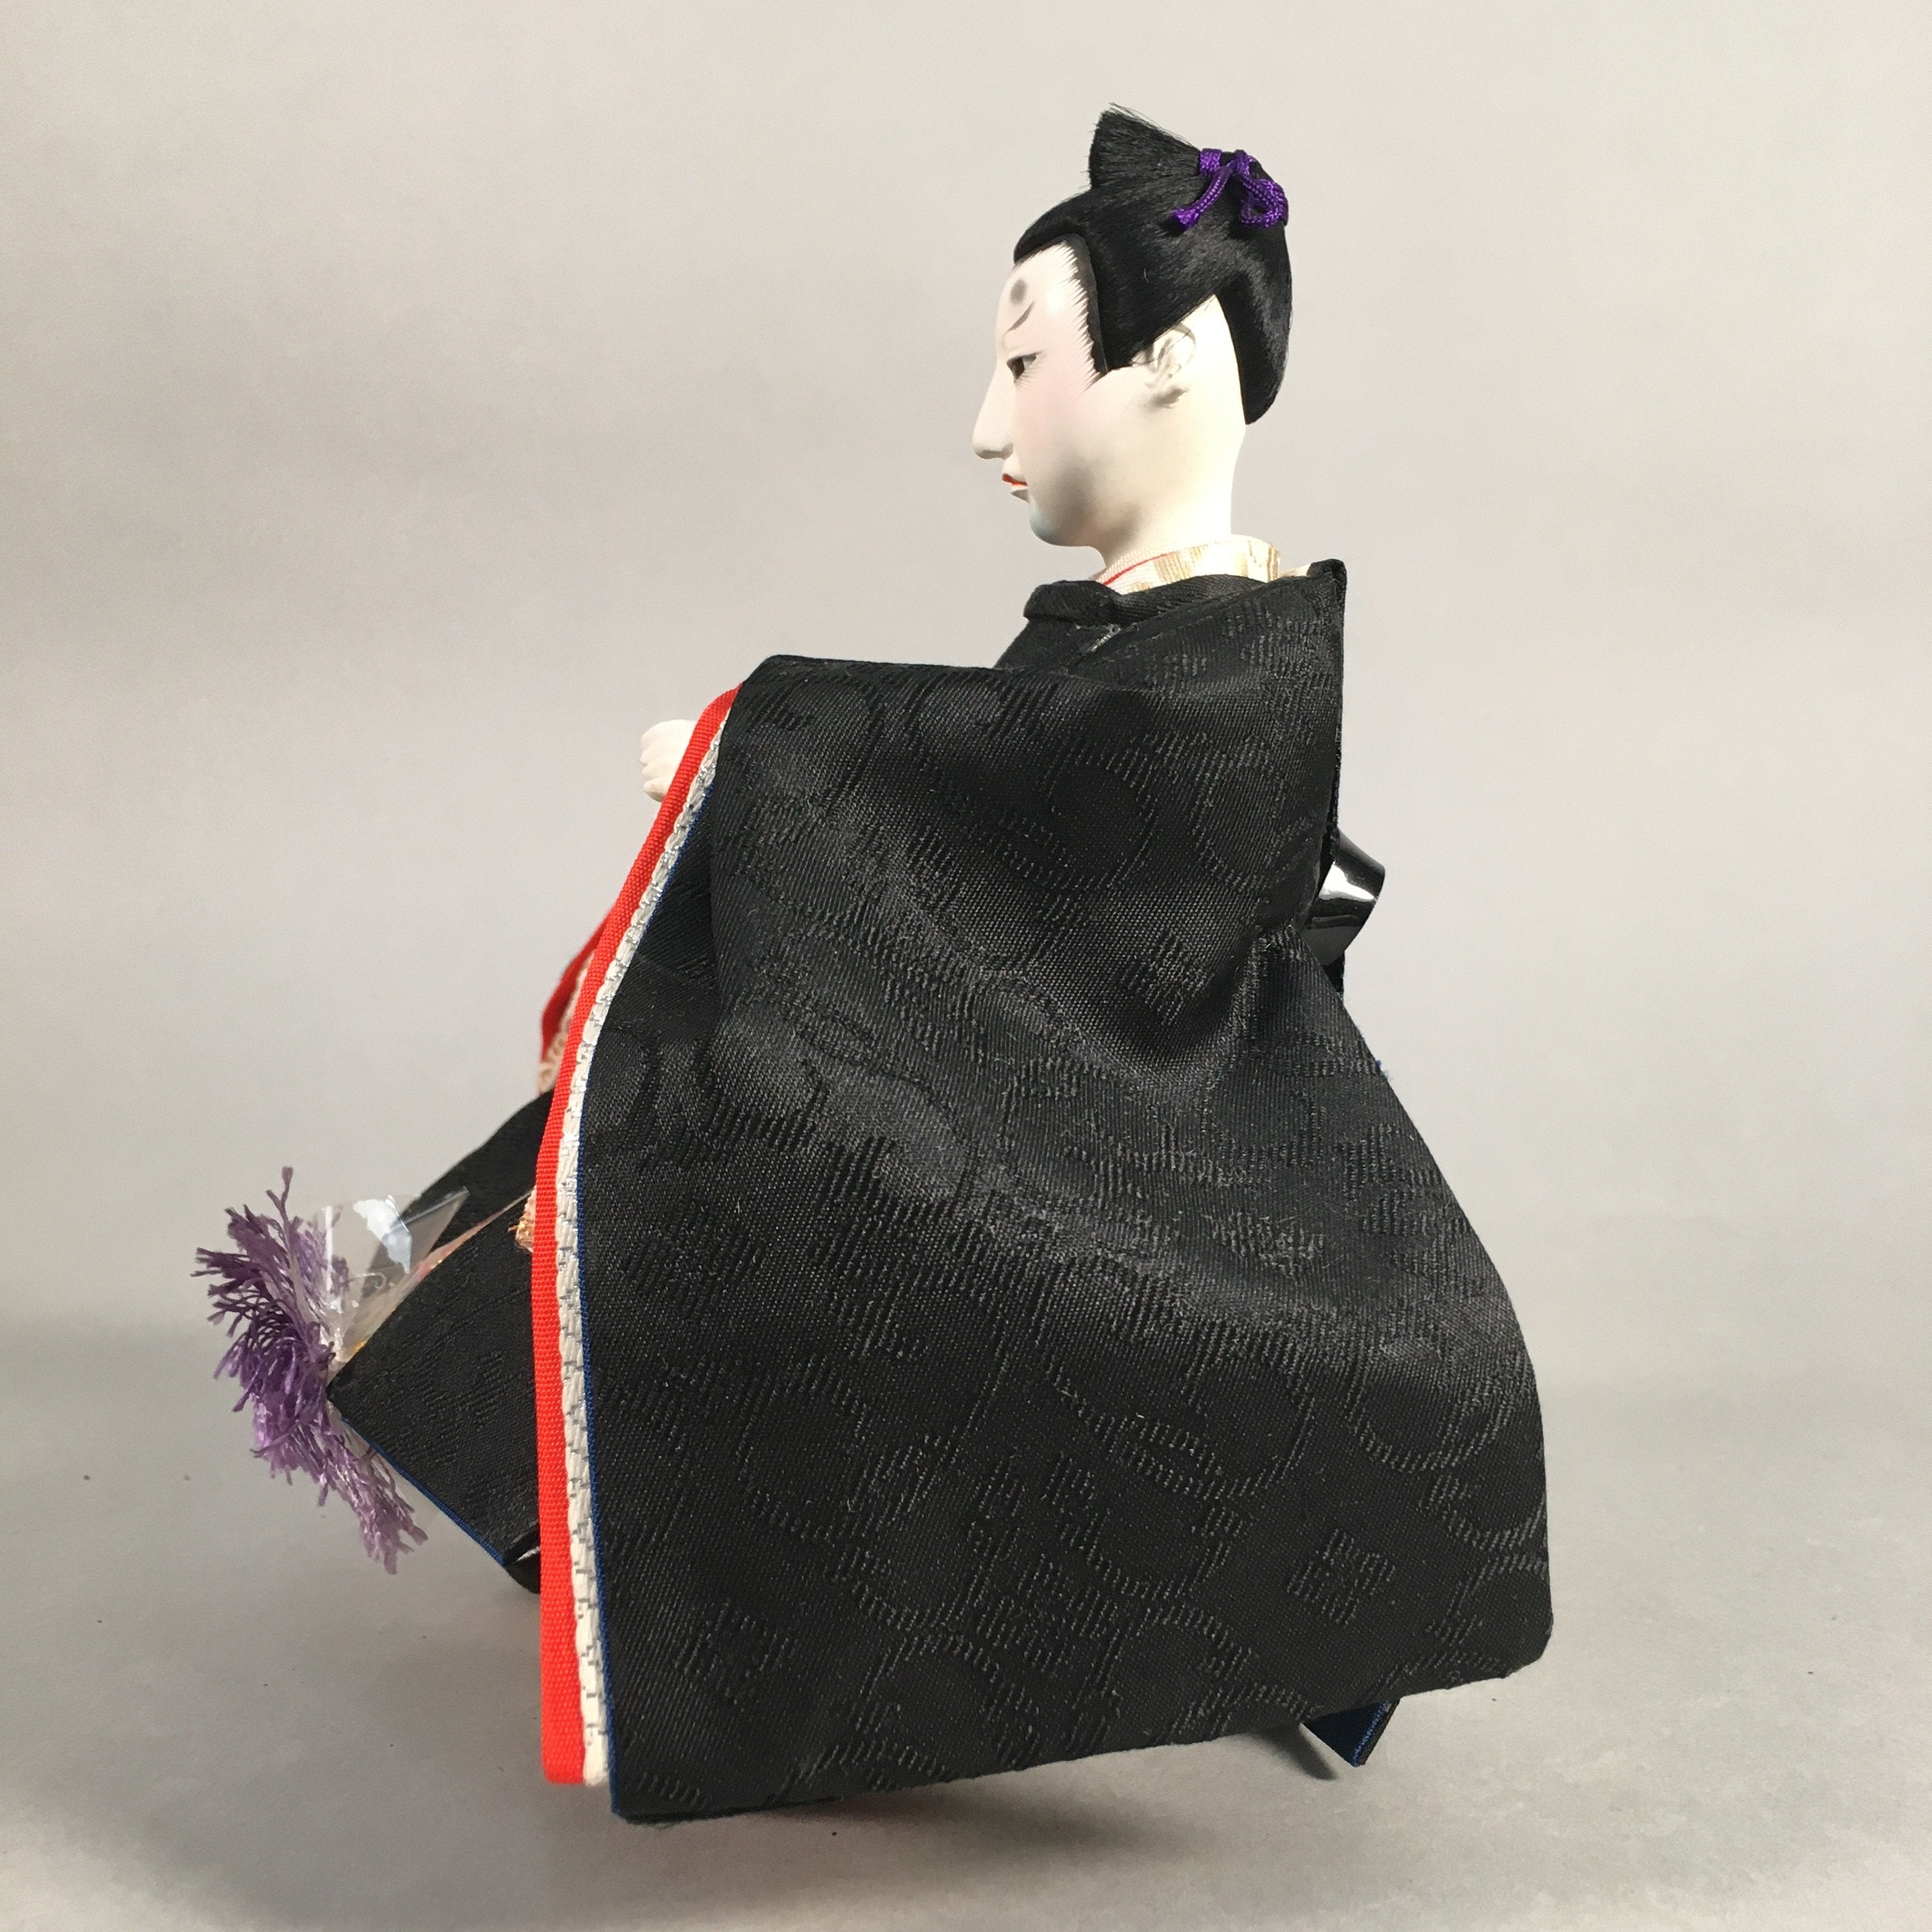 Japanese Hina Doll Guard Samurai Vtg Girls Day Decor Kimono Man ID304